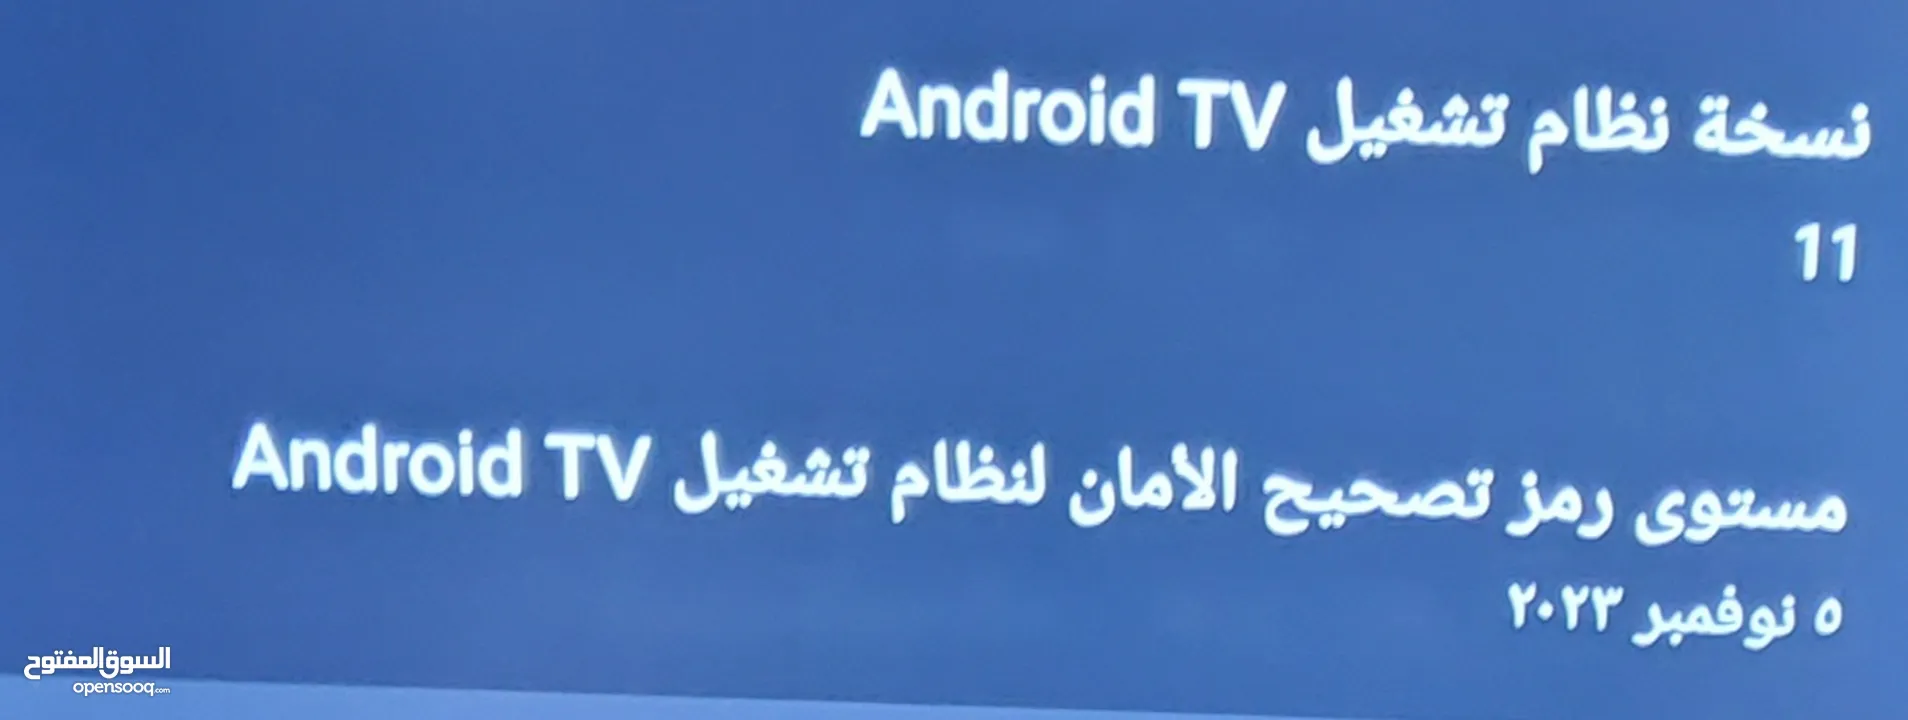 تلفزيون أندرويد باناسونيكPanasonic Android TV